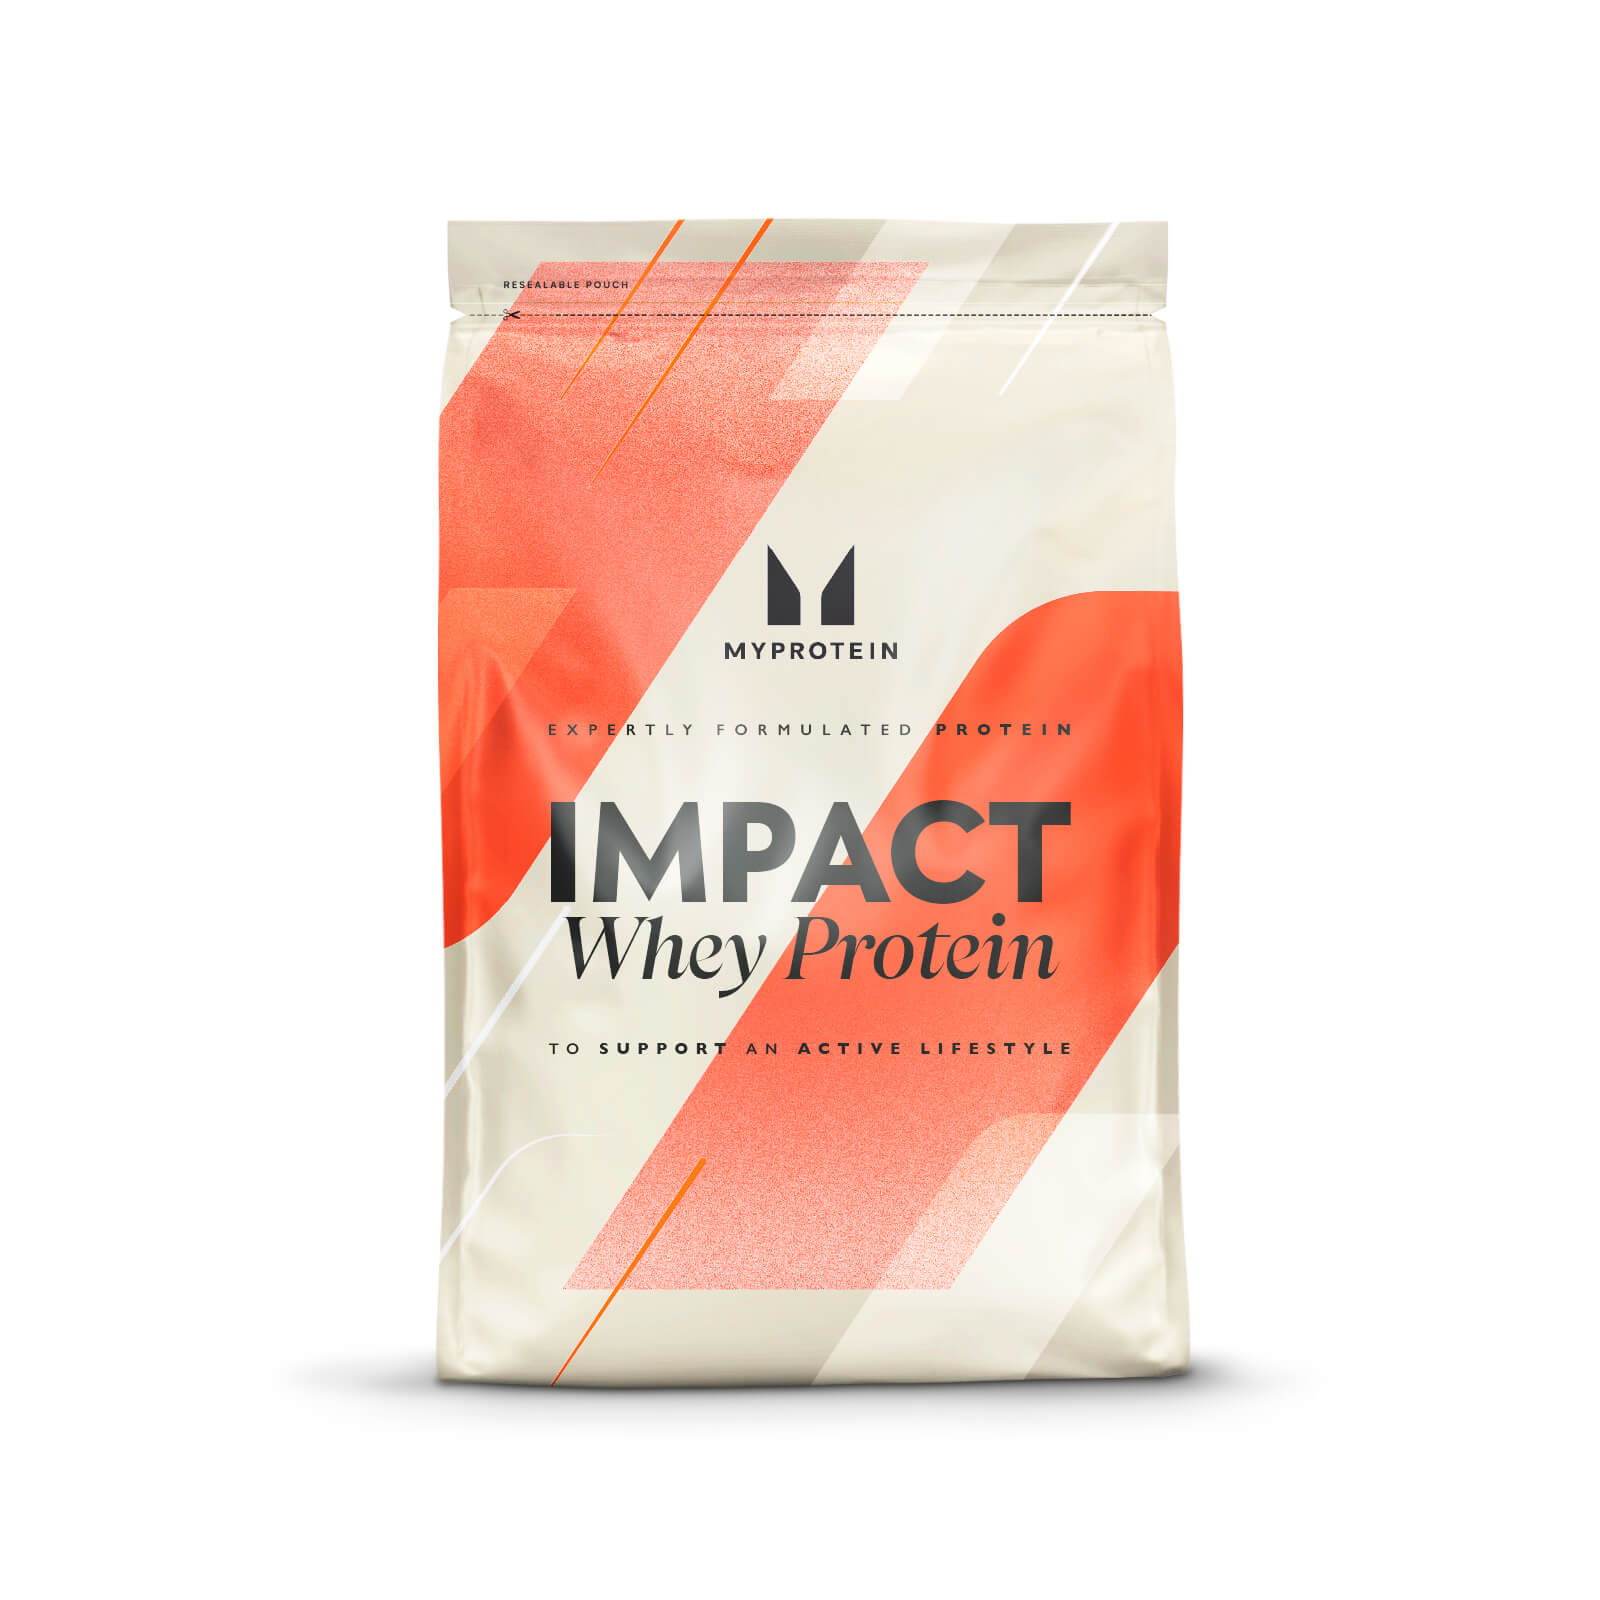 Impact Whey Protein Powder